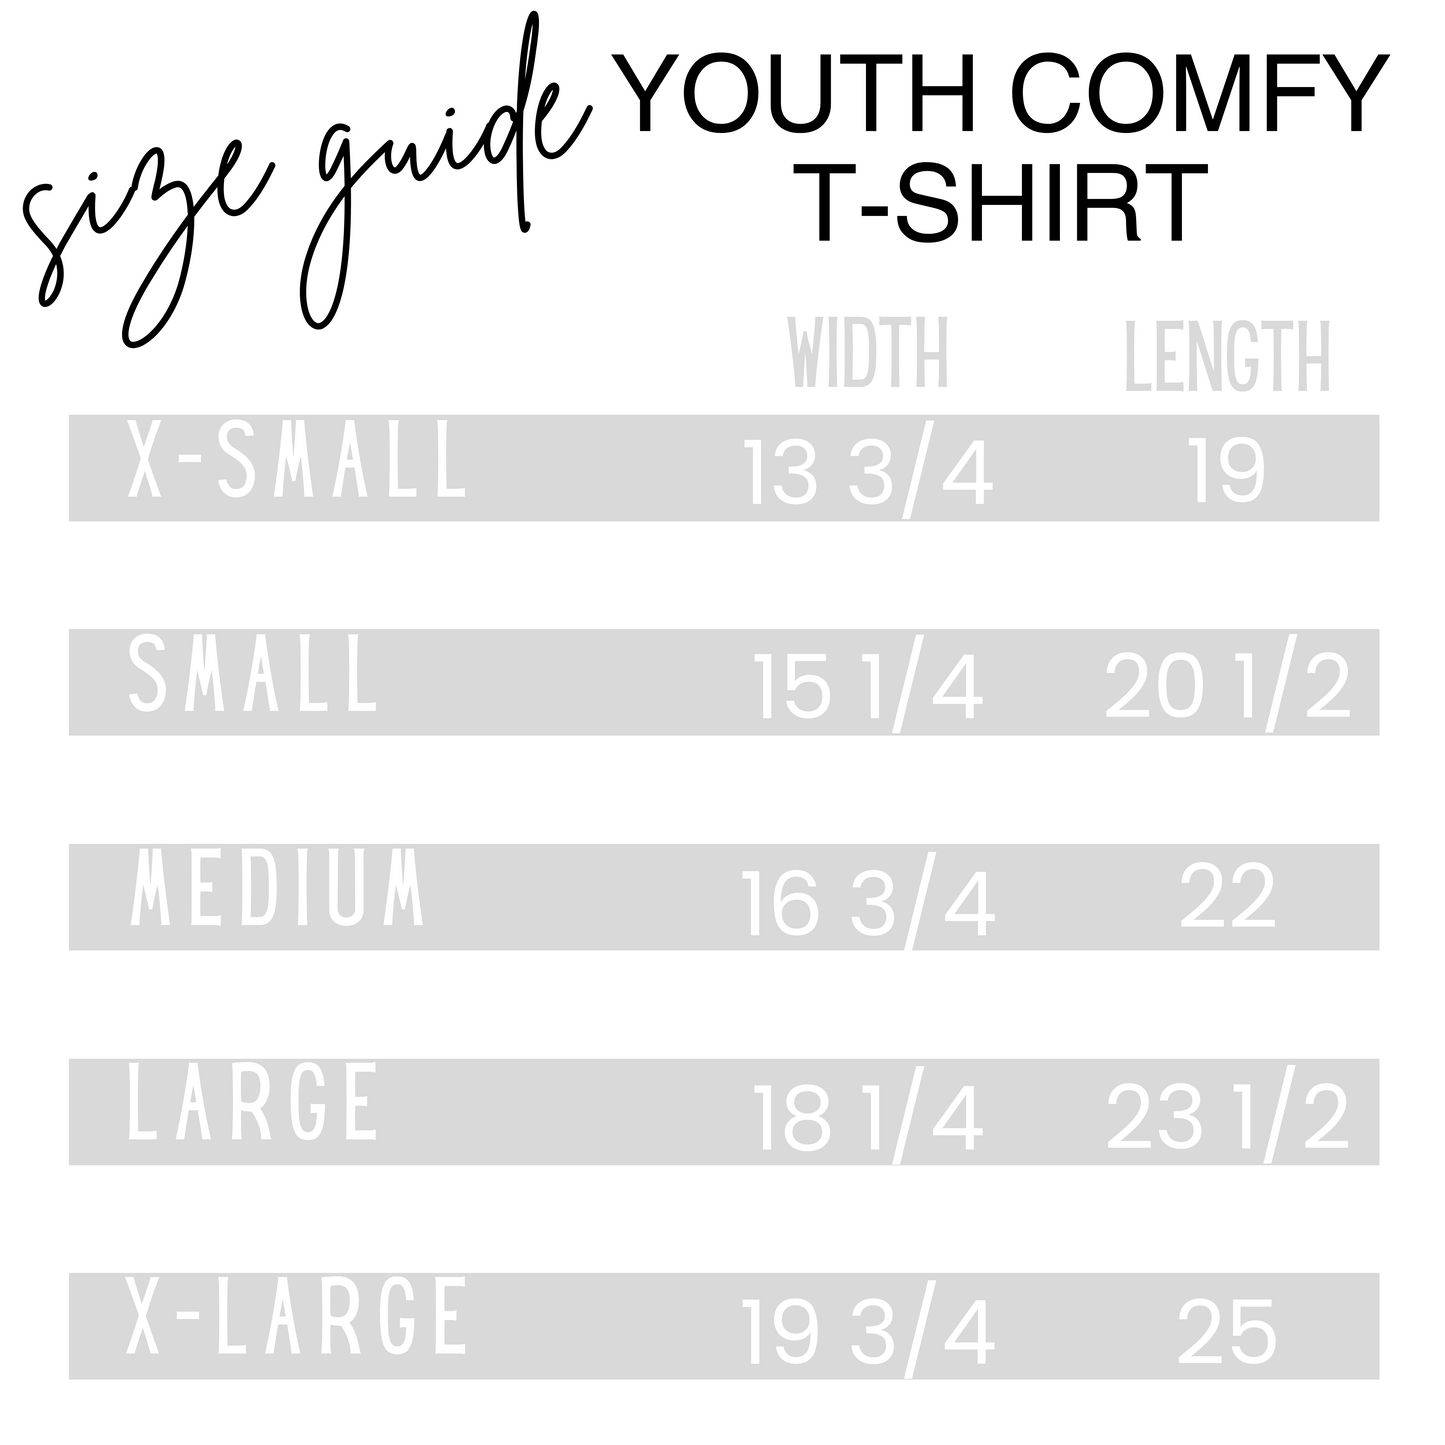 Sierra Athletics Youth Comfy T-Shirt